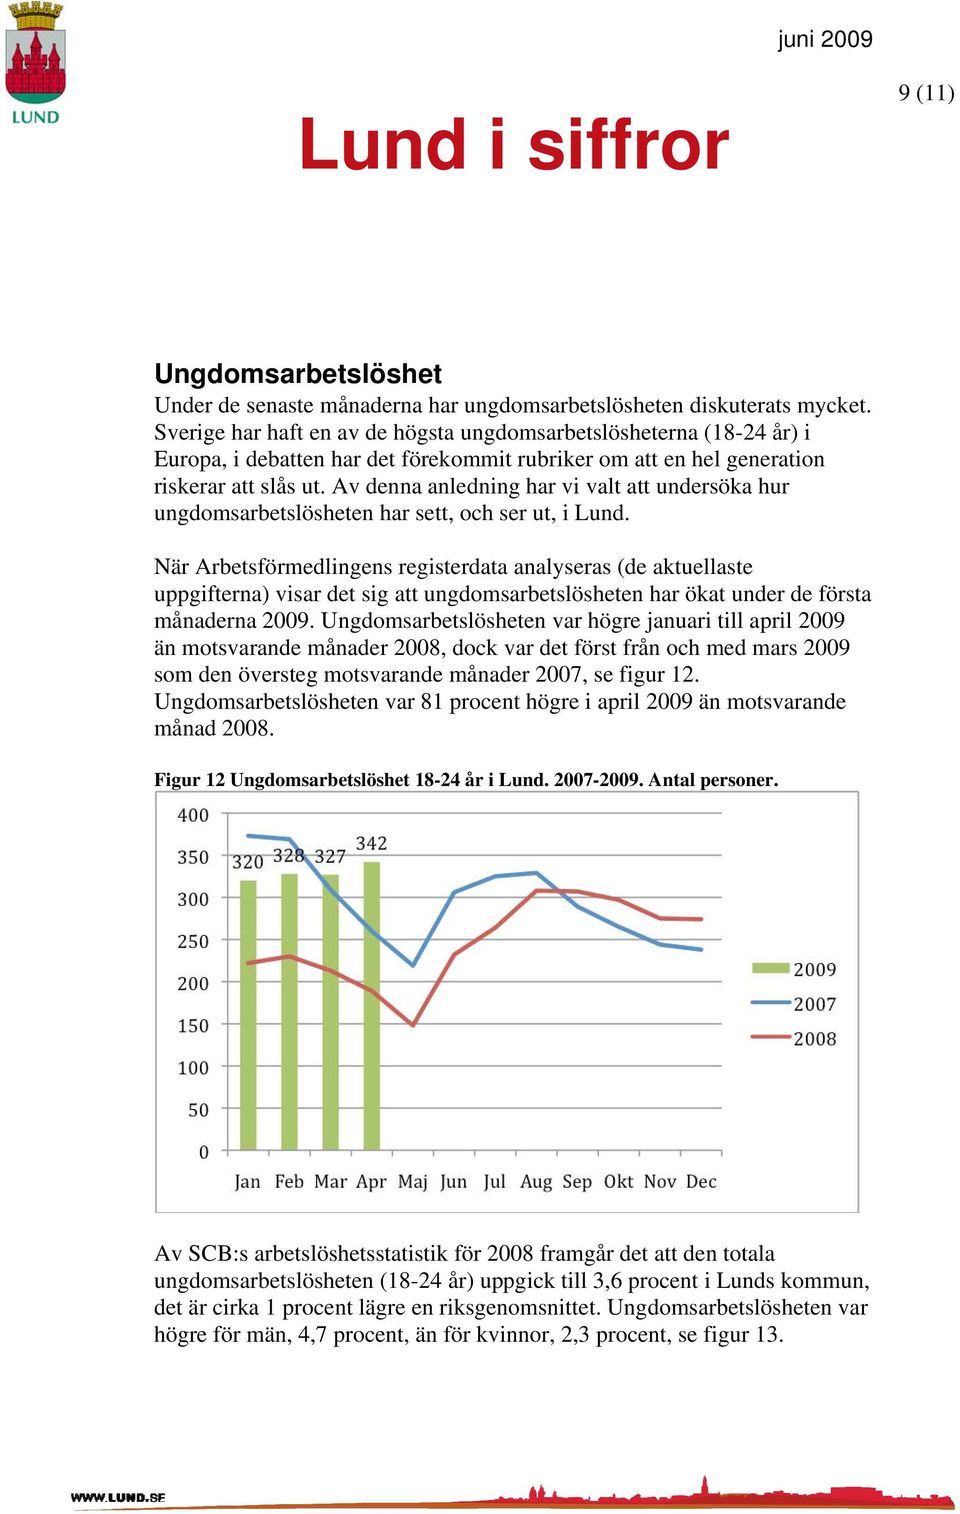 Av denna anledning har vi valt att undersöka hur ungdomsarbetslösheten har sett, och ser ut, i Lund.